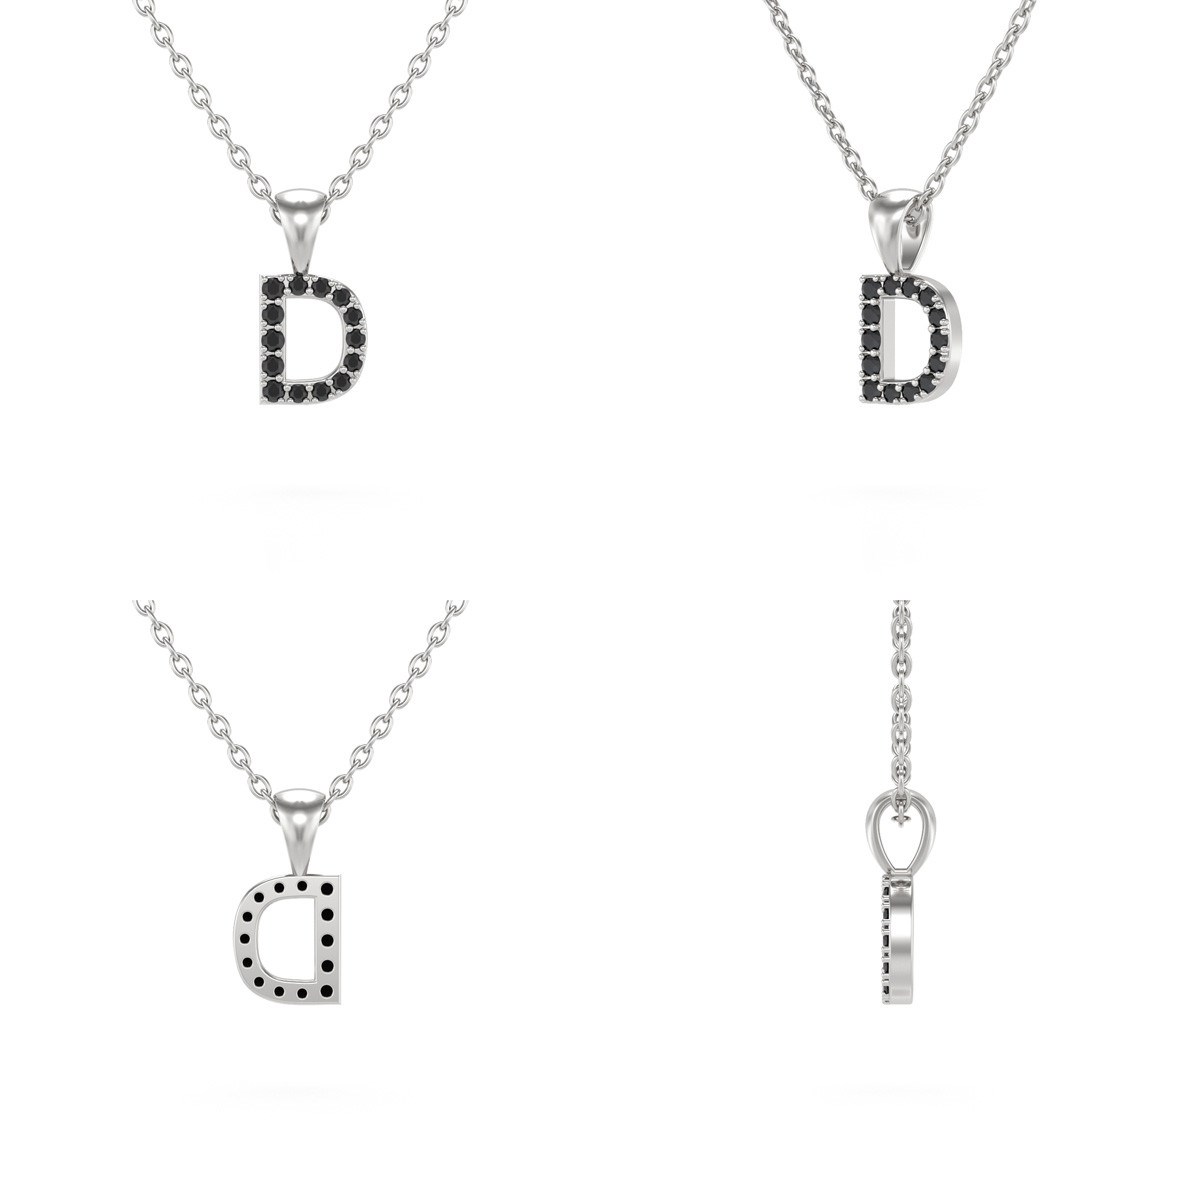 Collier Pendentif ADEN Lettre D Or 750 Blanc Diamant Noir Chaine Or 750 incluse 0.72grs - vue 2